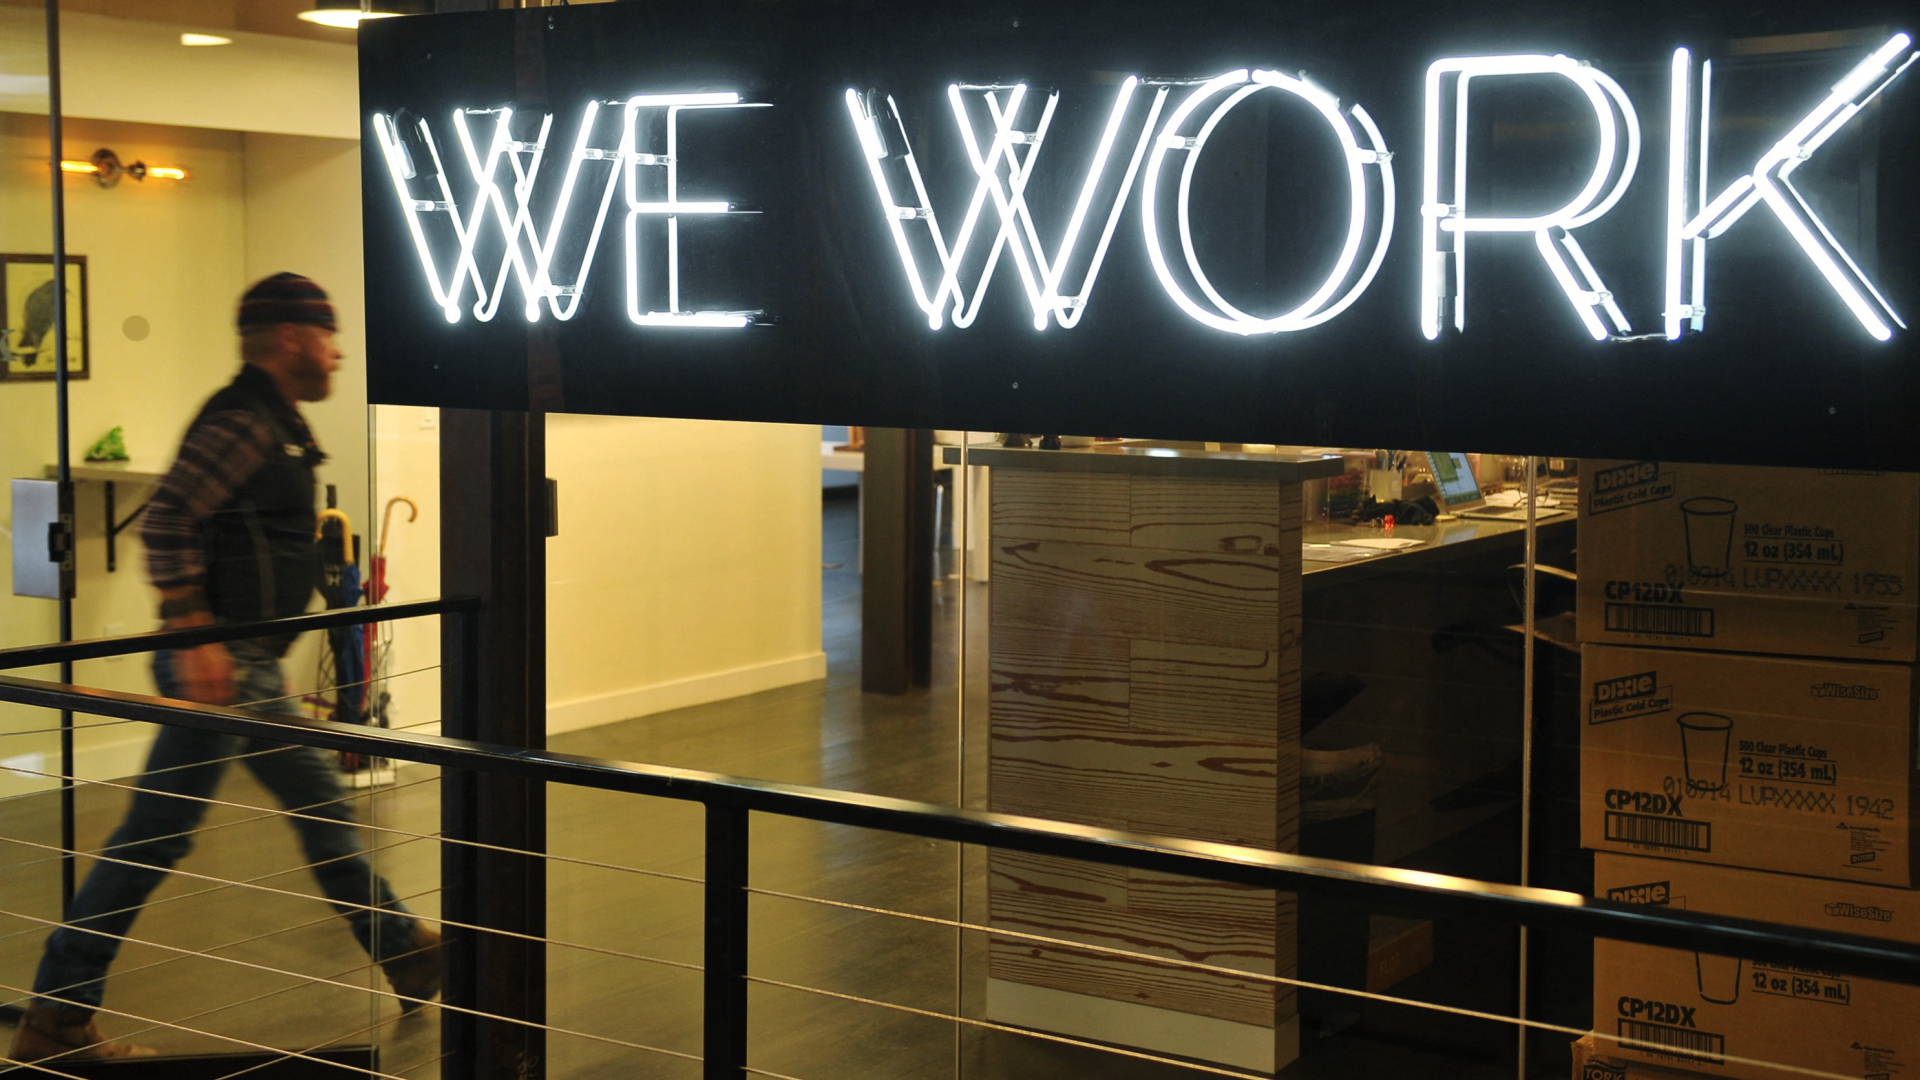 Lichtinstallation "We Work" am Eingang eines Coworking Space